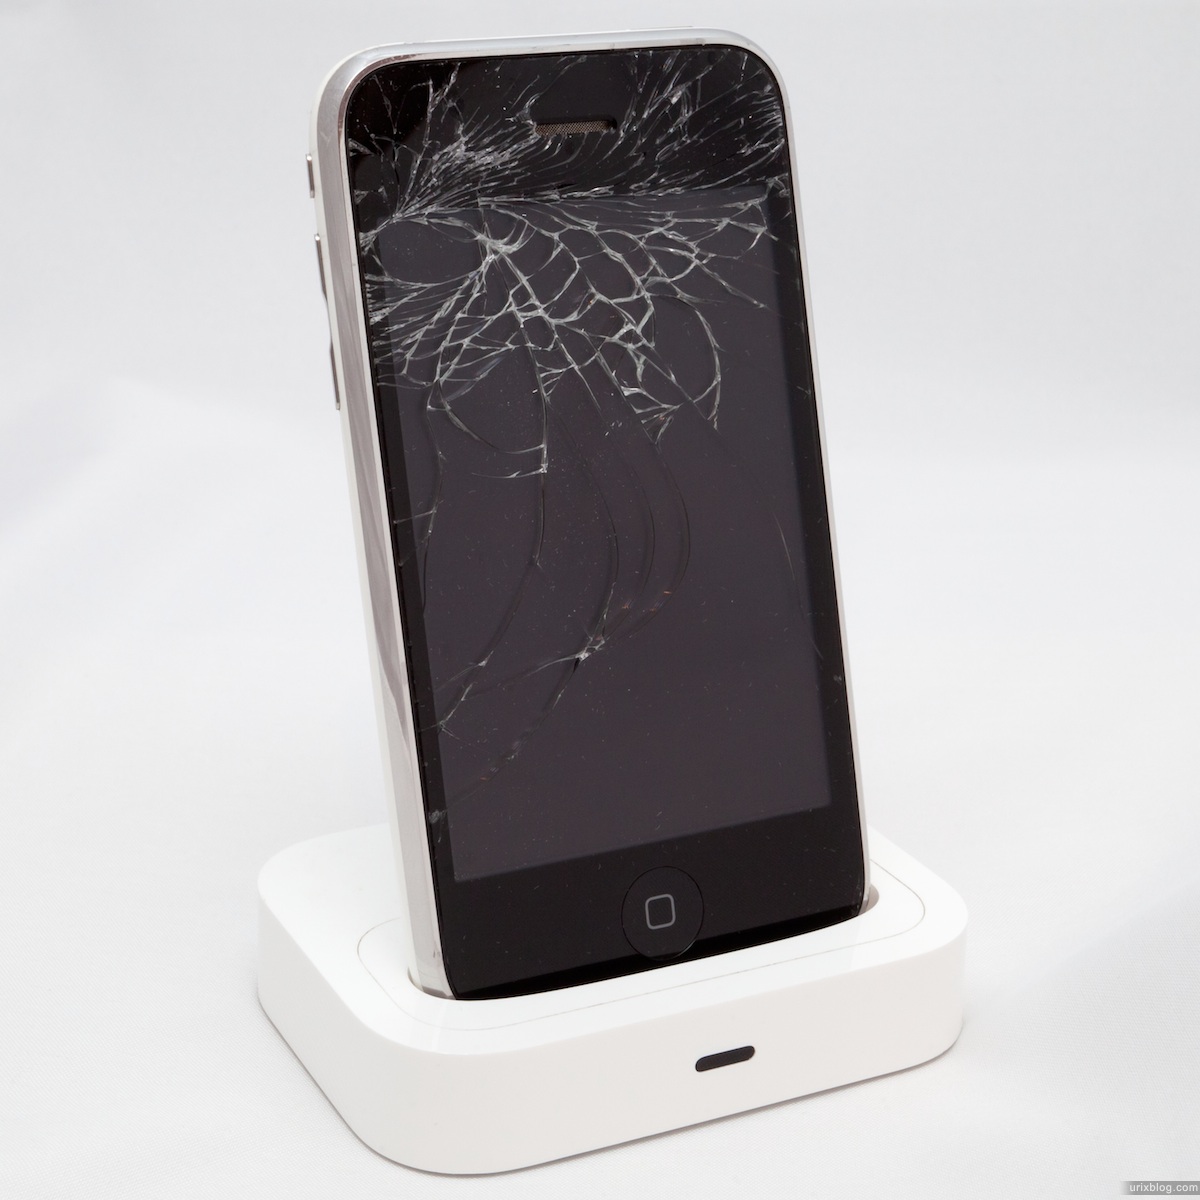 2011 broken iPhone 3GS